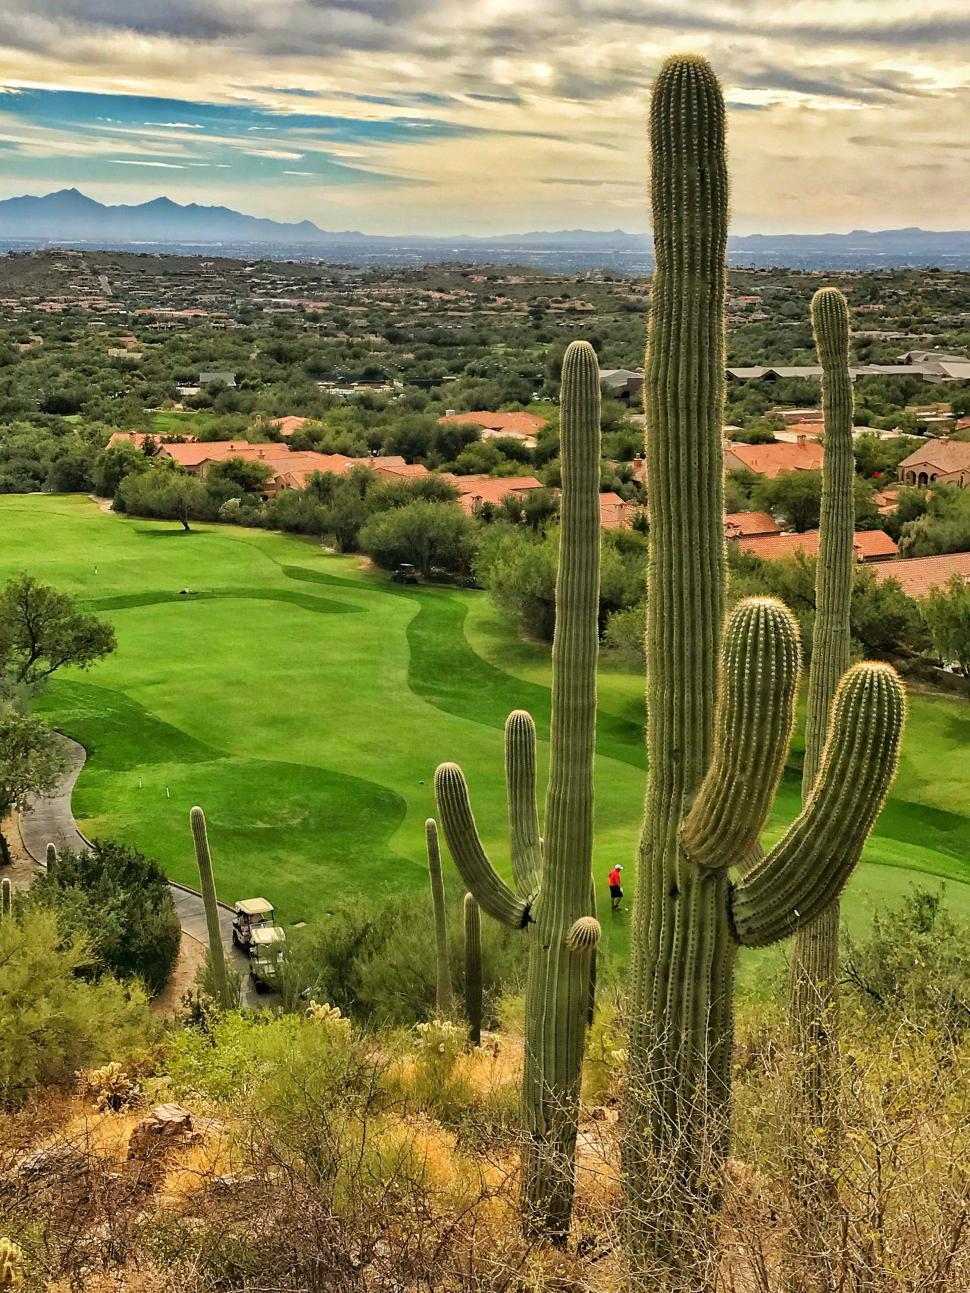 Free Image of Dramatic Golf Hole in Tucson, Arizona  